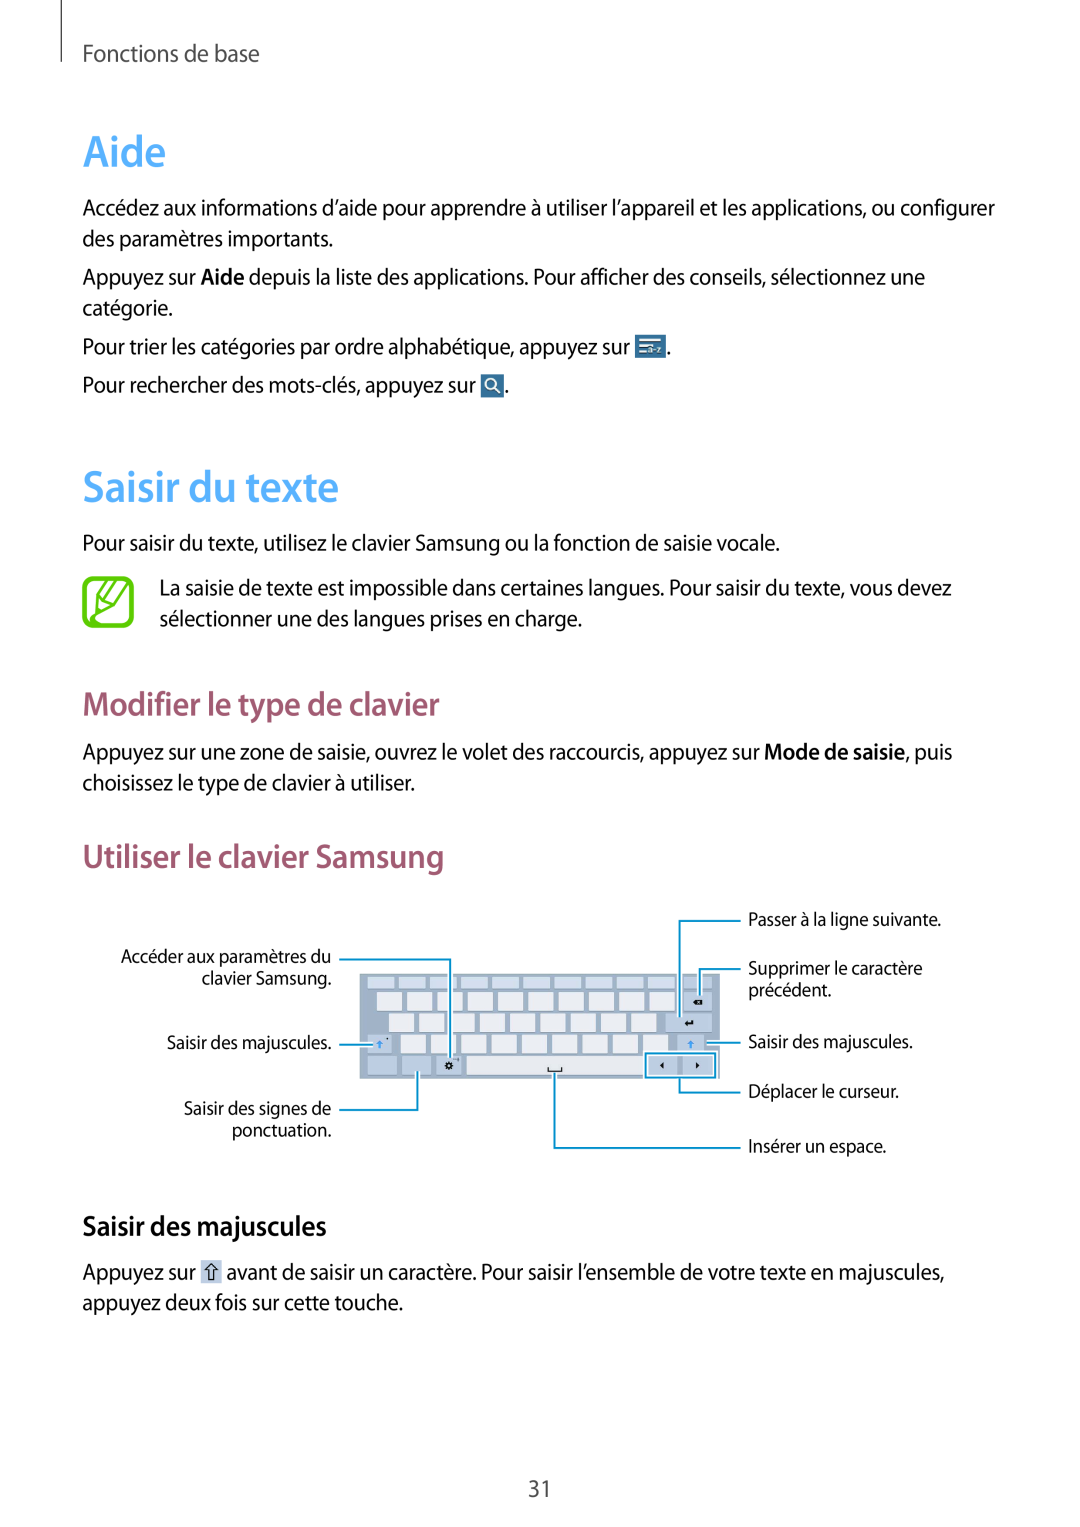 Samsung SM-T530NZWAXEF Aide, Saisir du texte, Modifier le type de clavier, Utiliser le clavier Samsung, Fonctions de base 